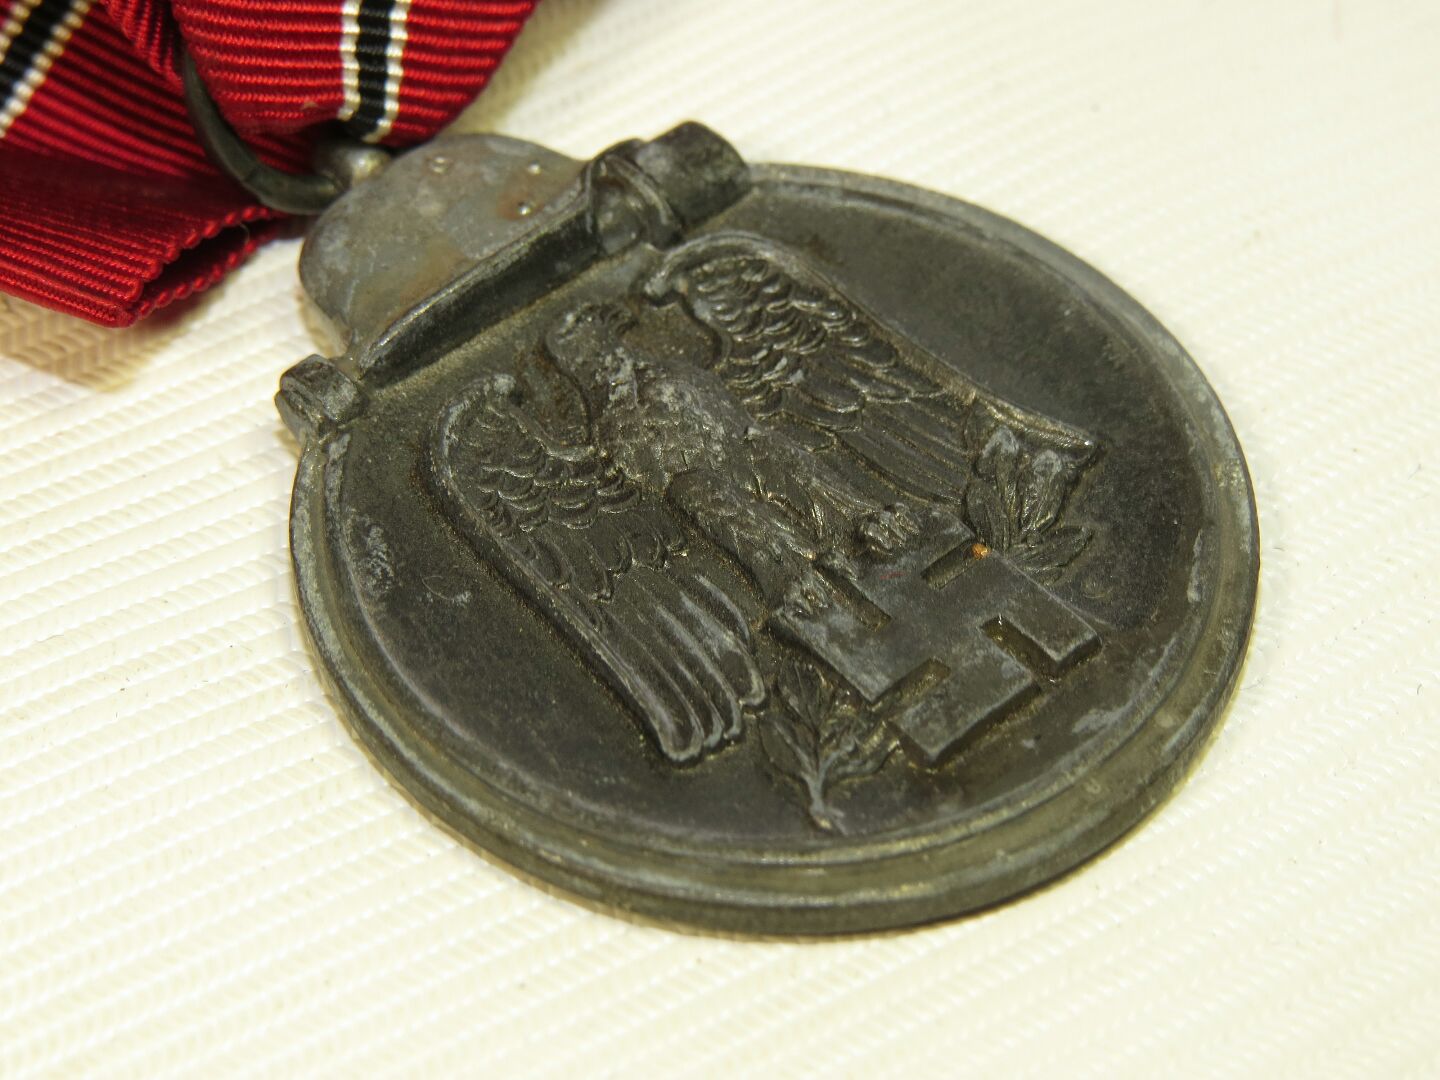 Reproduktion WW2 Deutsche Militär Armee 30mm breit Ostfront Medaille Band